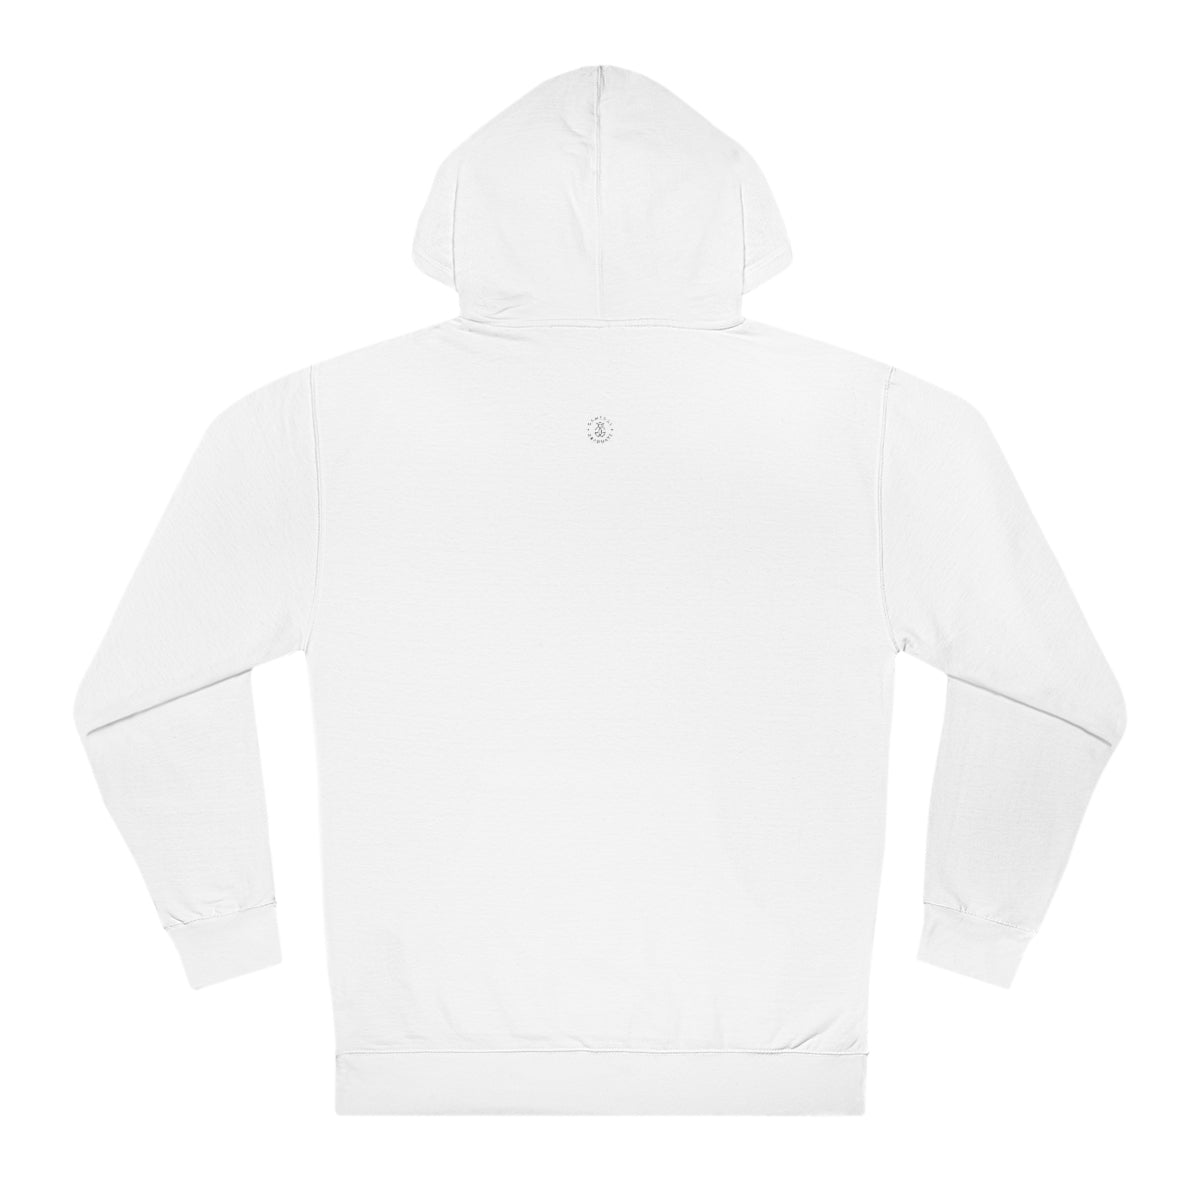 Texas Tech Hooded Sweatshirt - GG - ITC